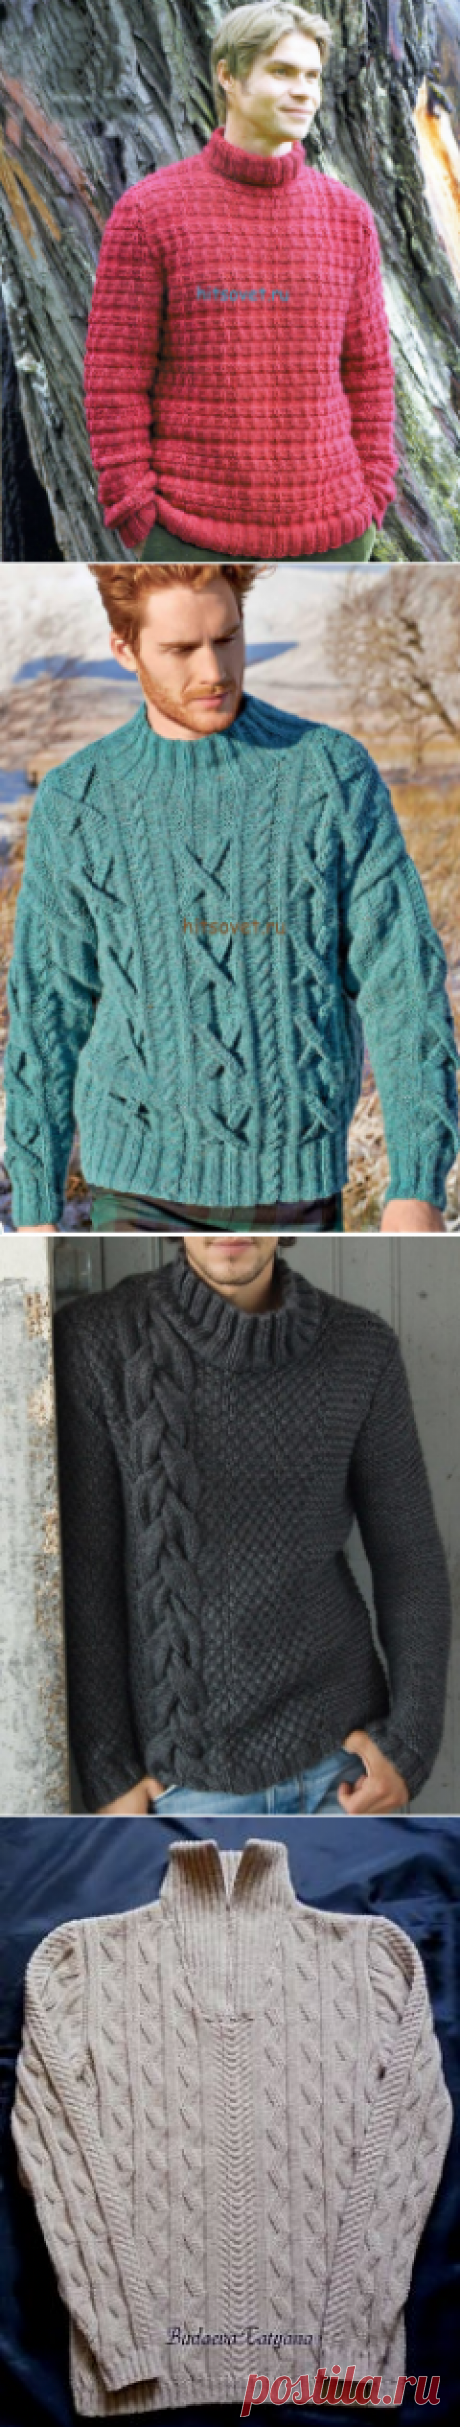 Поиск на Постиле: мужские свитера спицами и другие материалы. Новое в Вашей подборке на Постиле